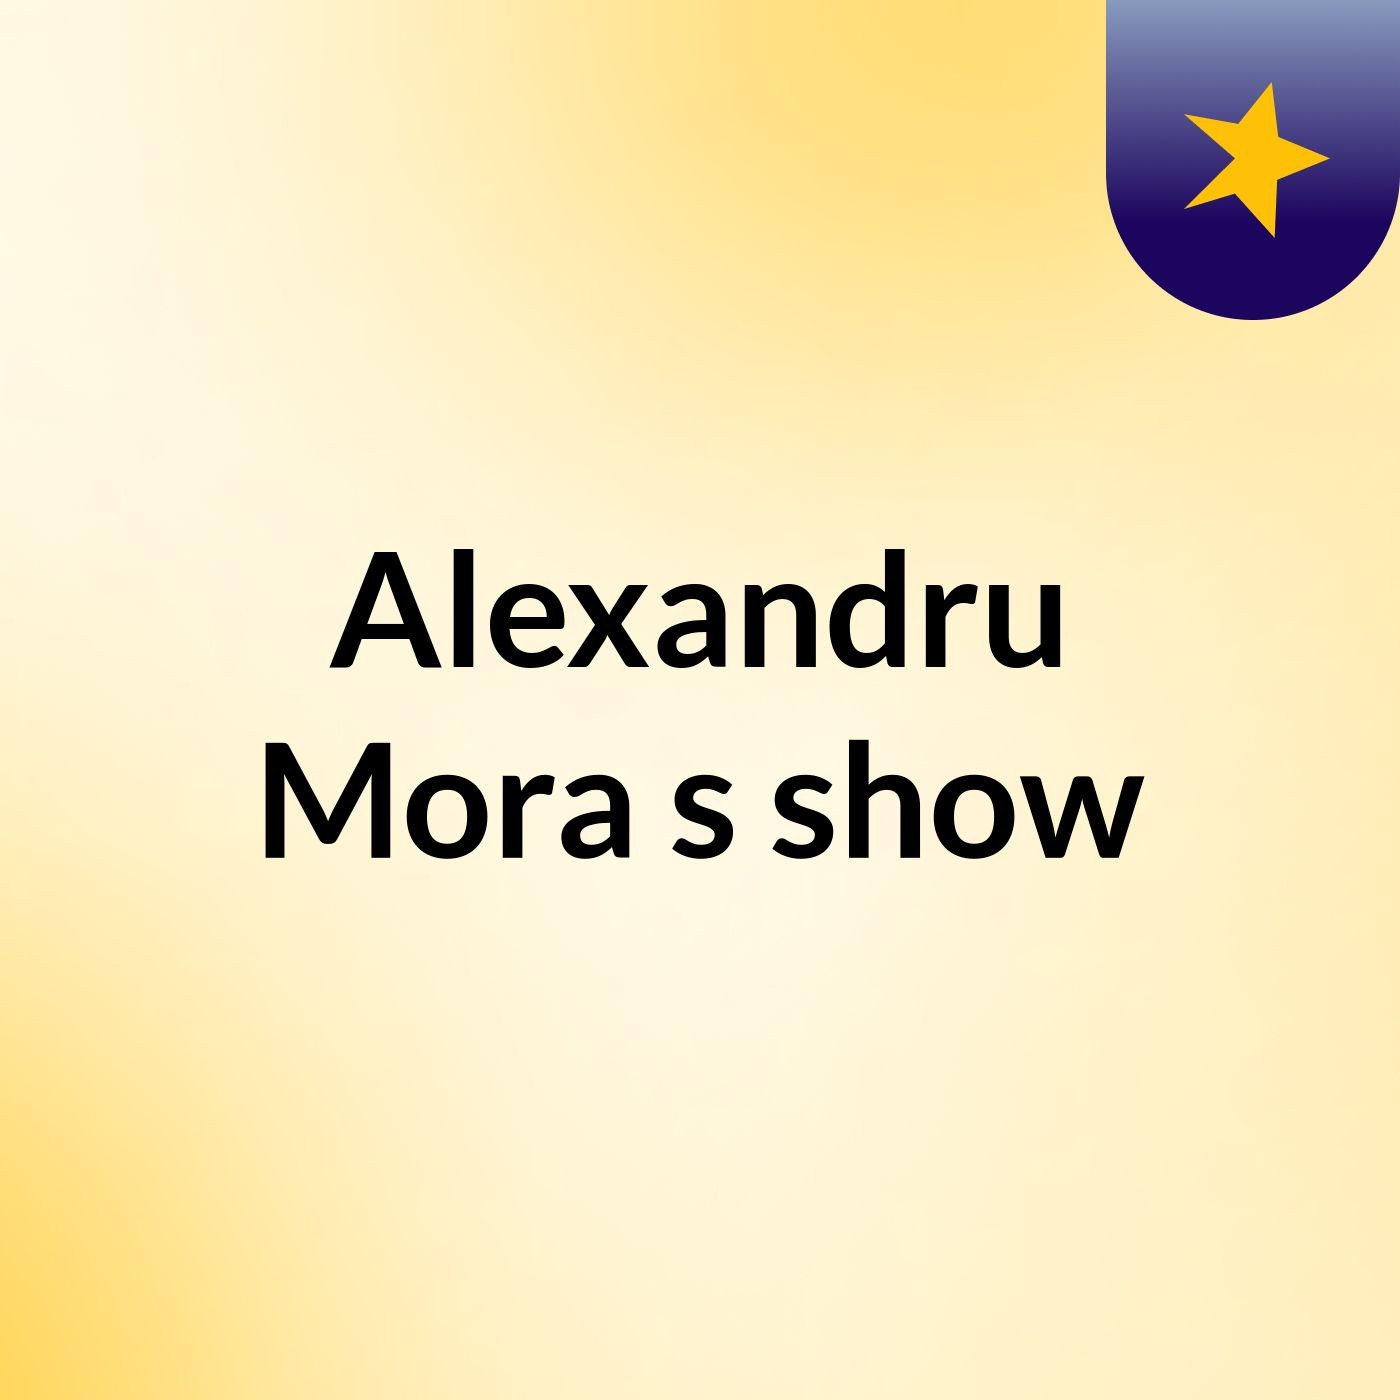 Alexandru Mora's show